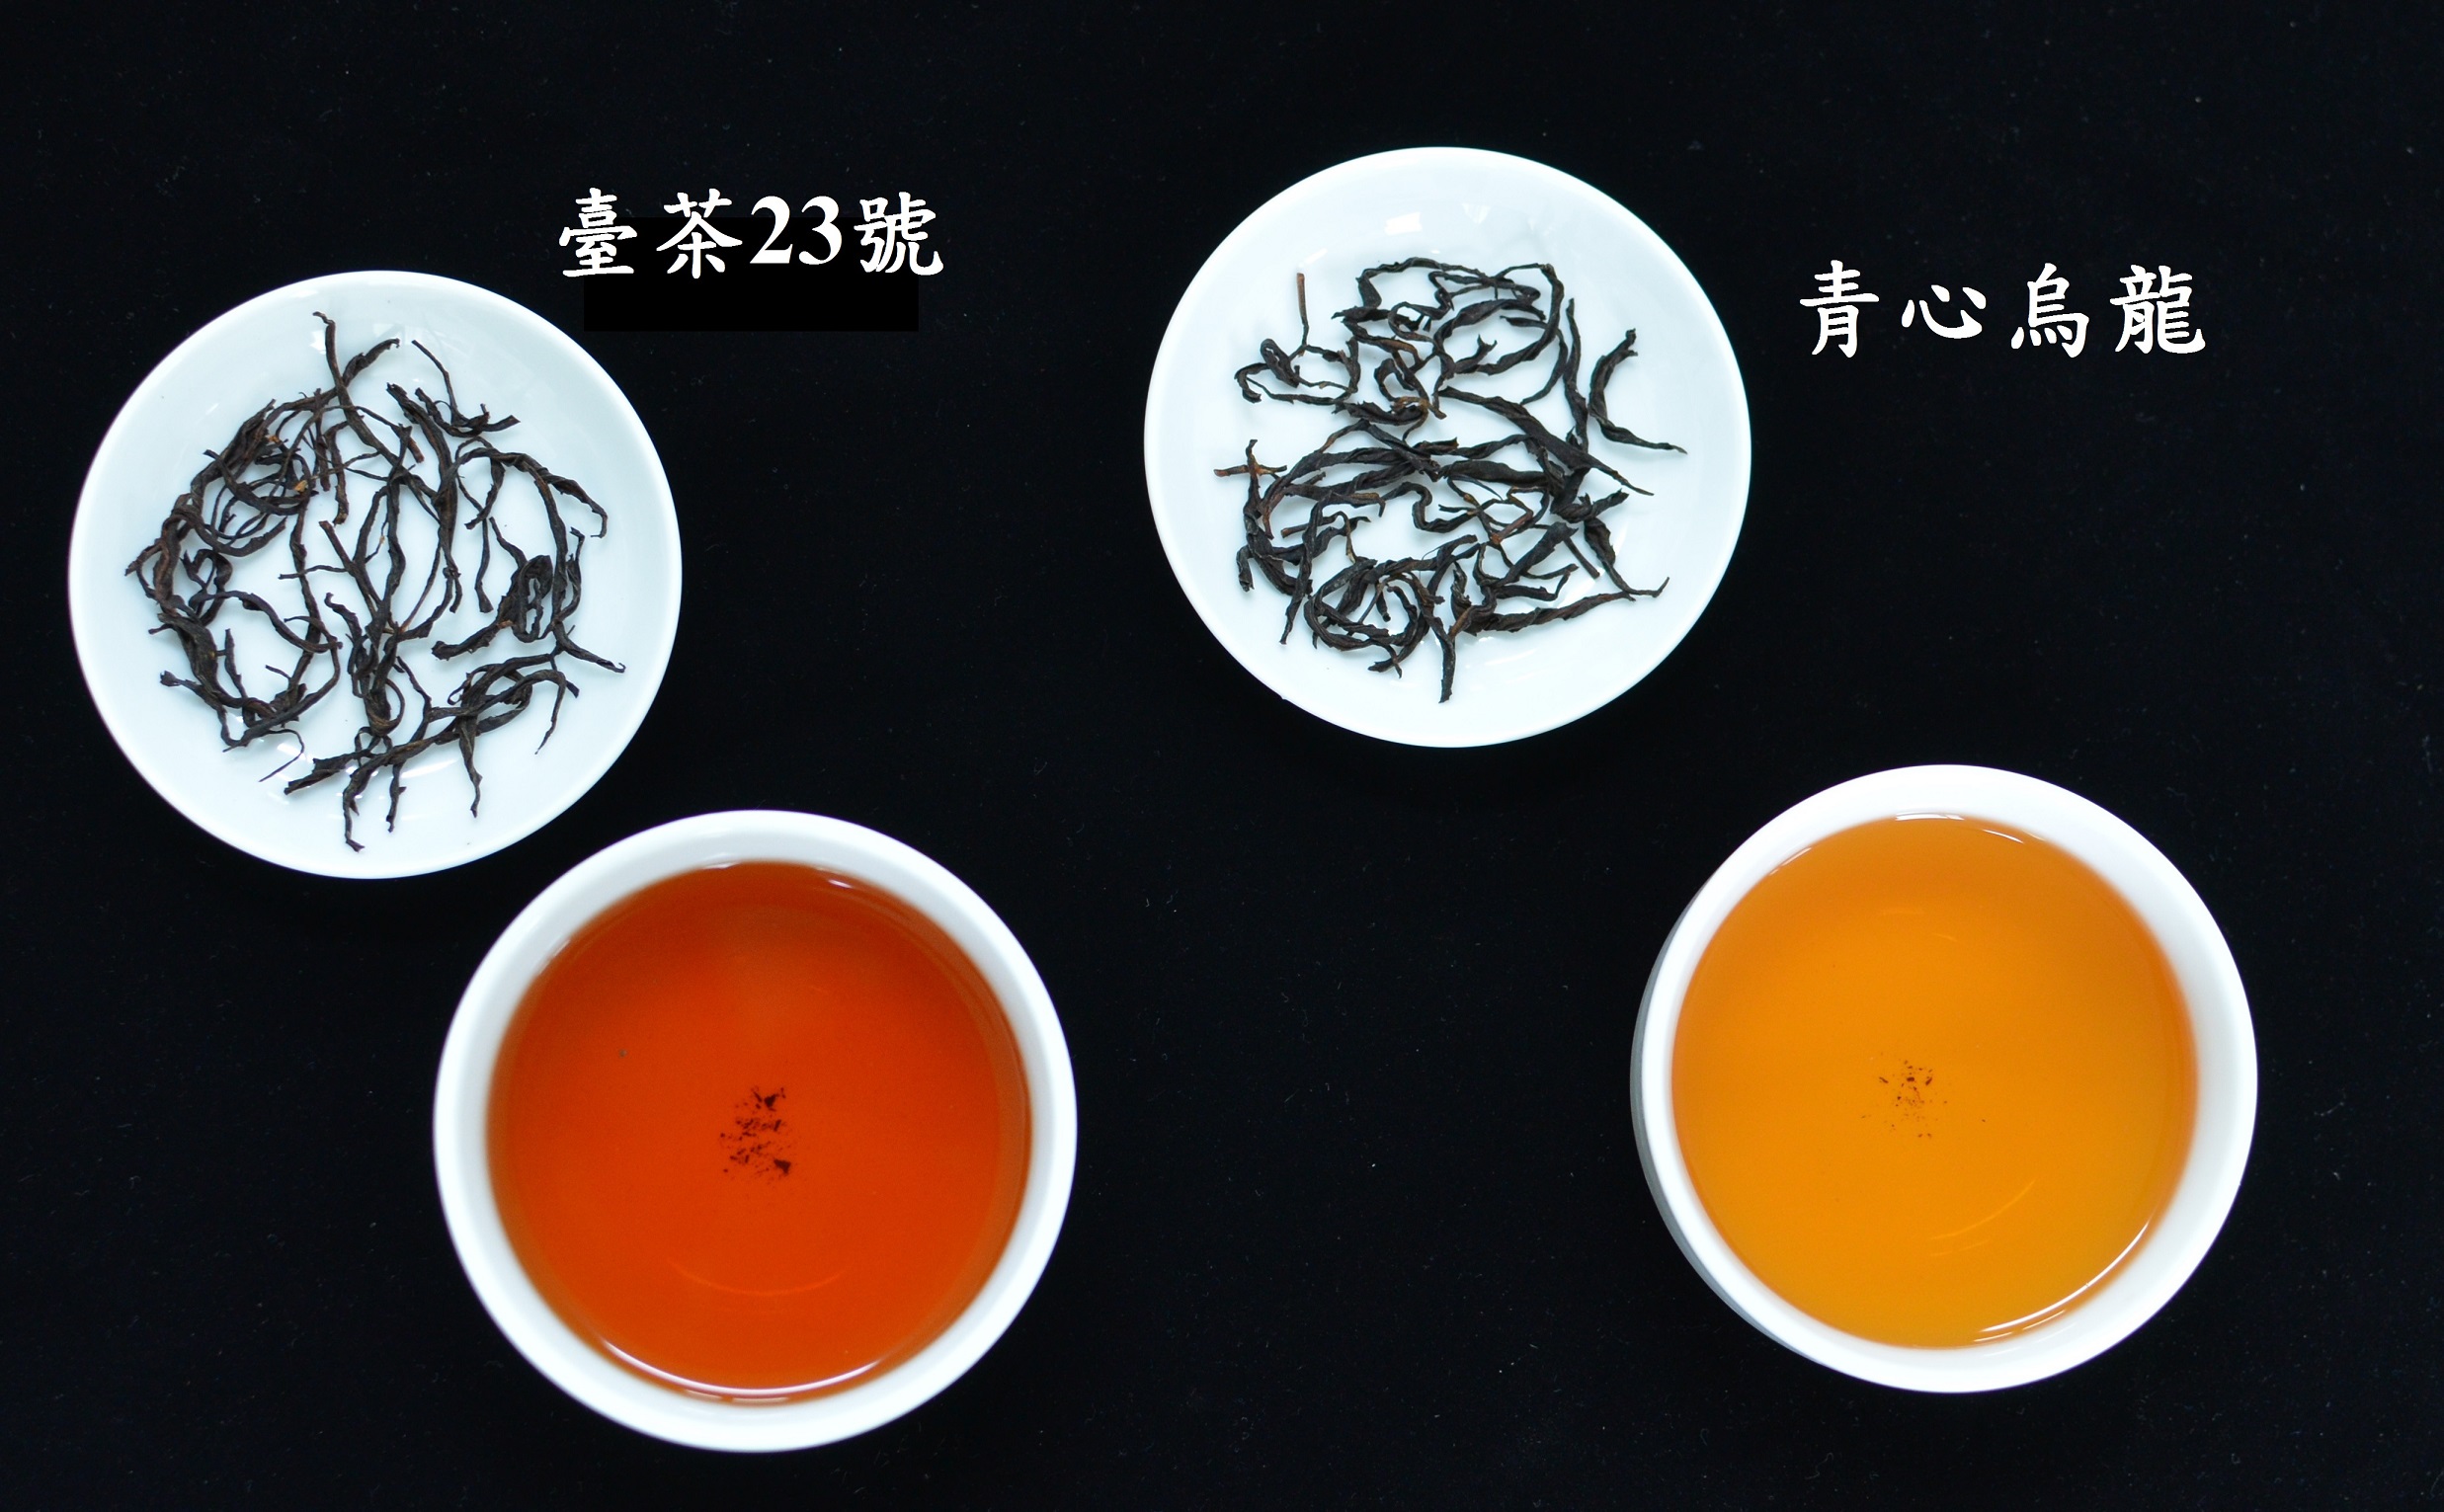 圖3.臺茶23號成茶與茶湯